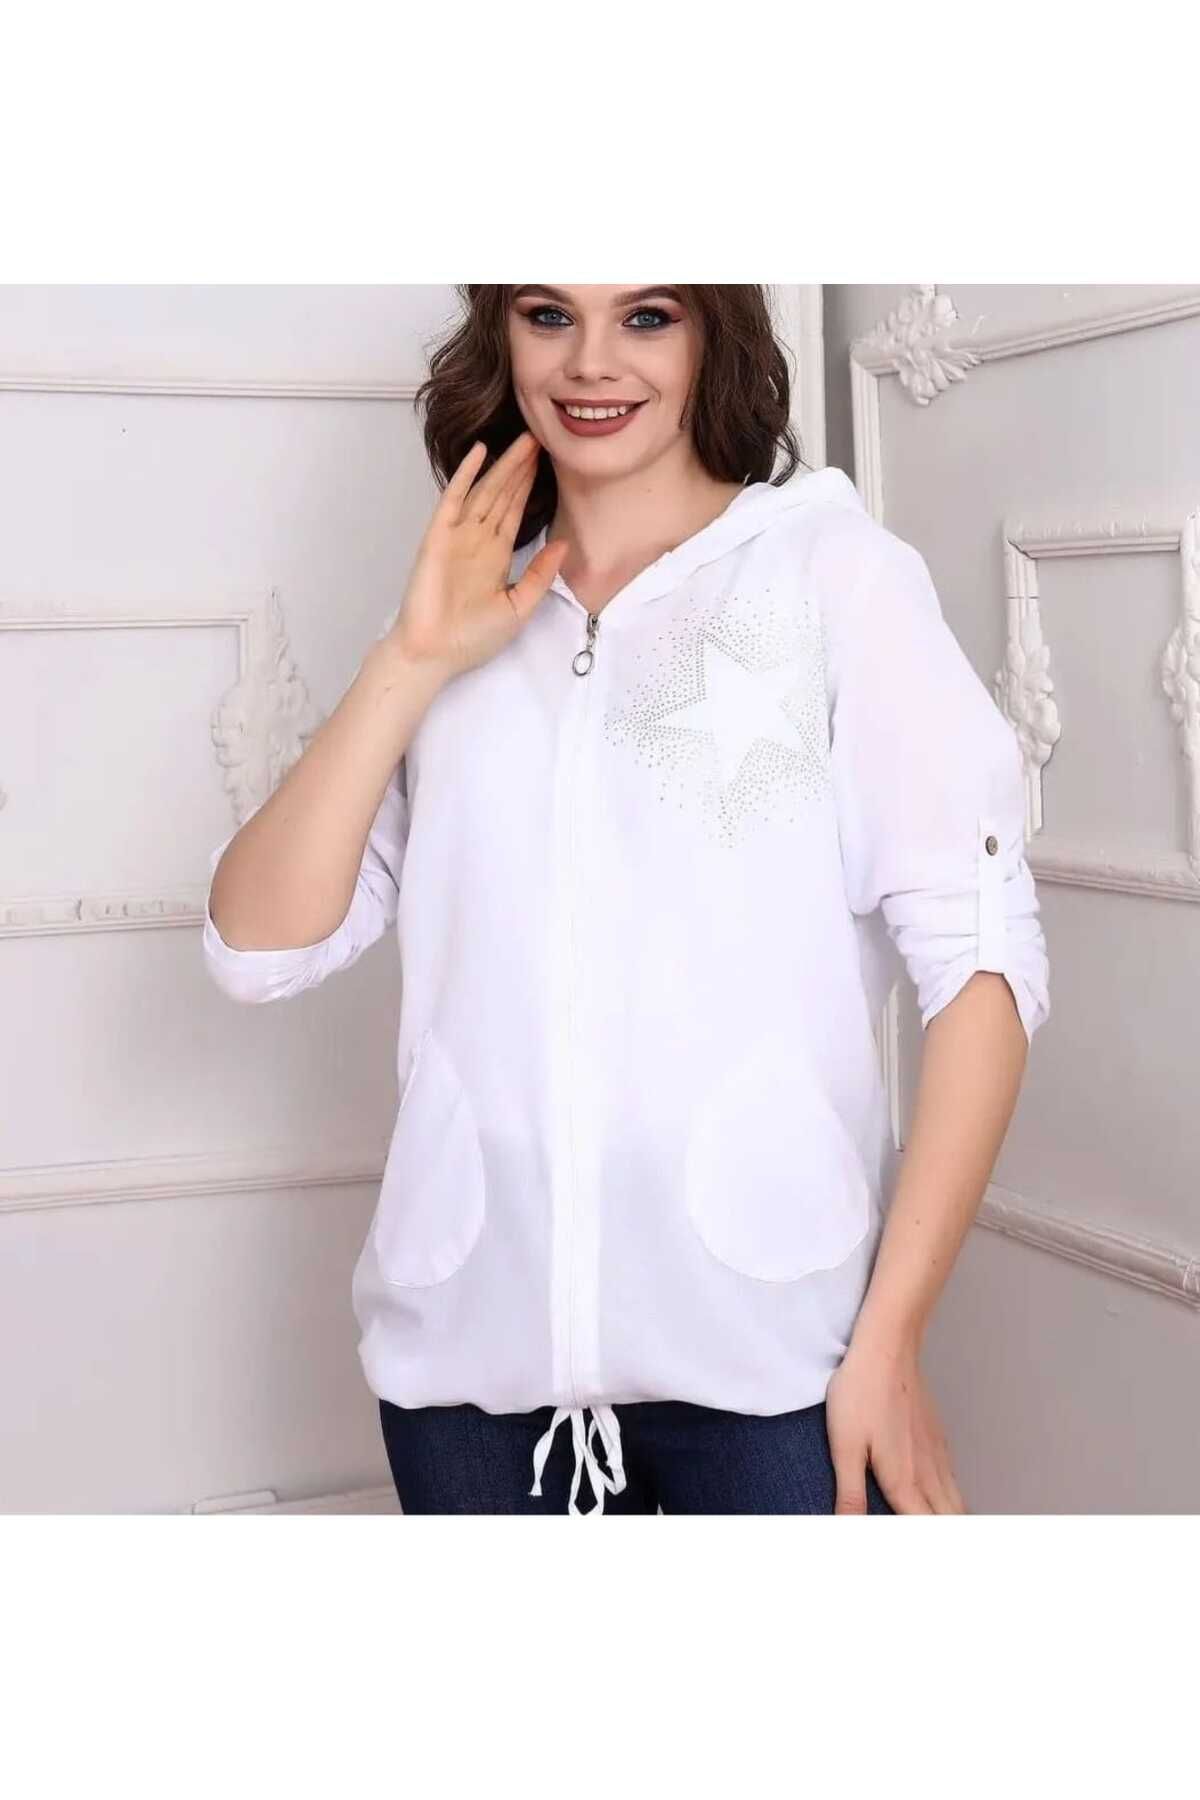 NUR TEKSTİL Kadın Beyaz %100 Pamuklu Şile Bezi Yıdız Deseli Kapşonlu Önden   fermuarlı  gömlek